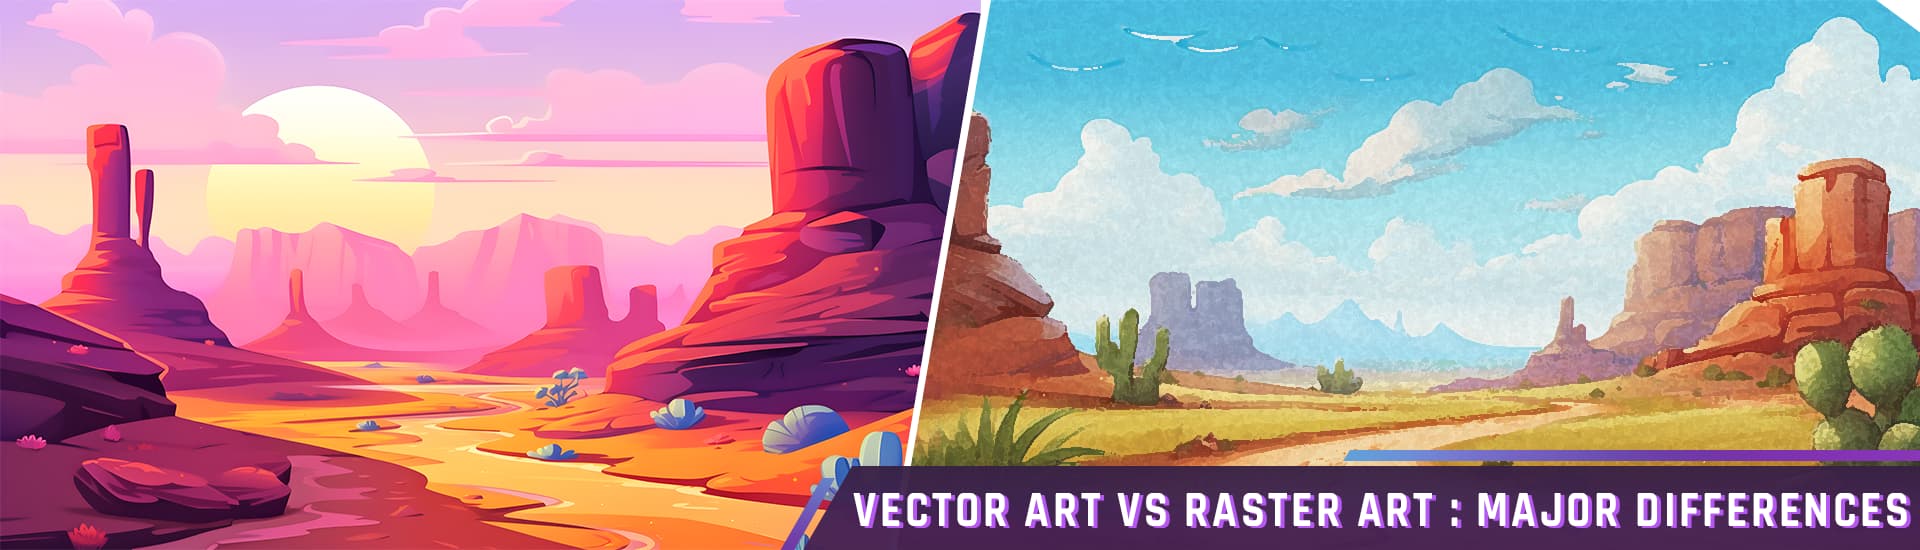 vector art vs raster art